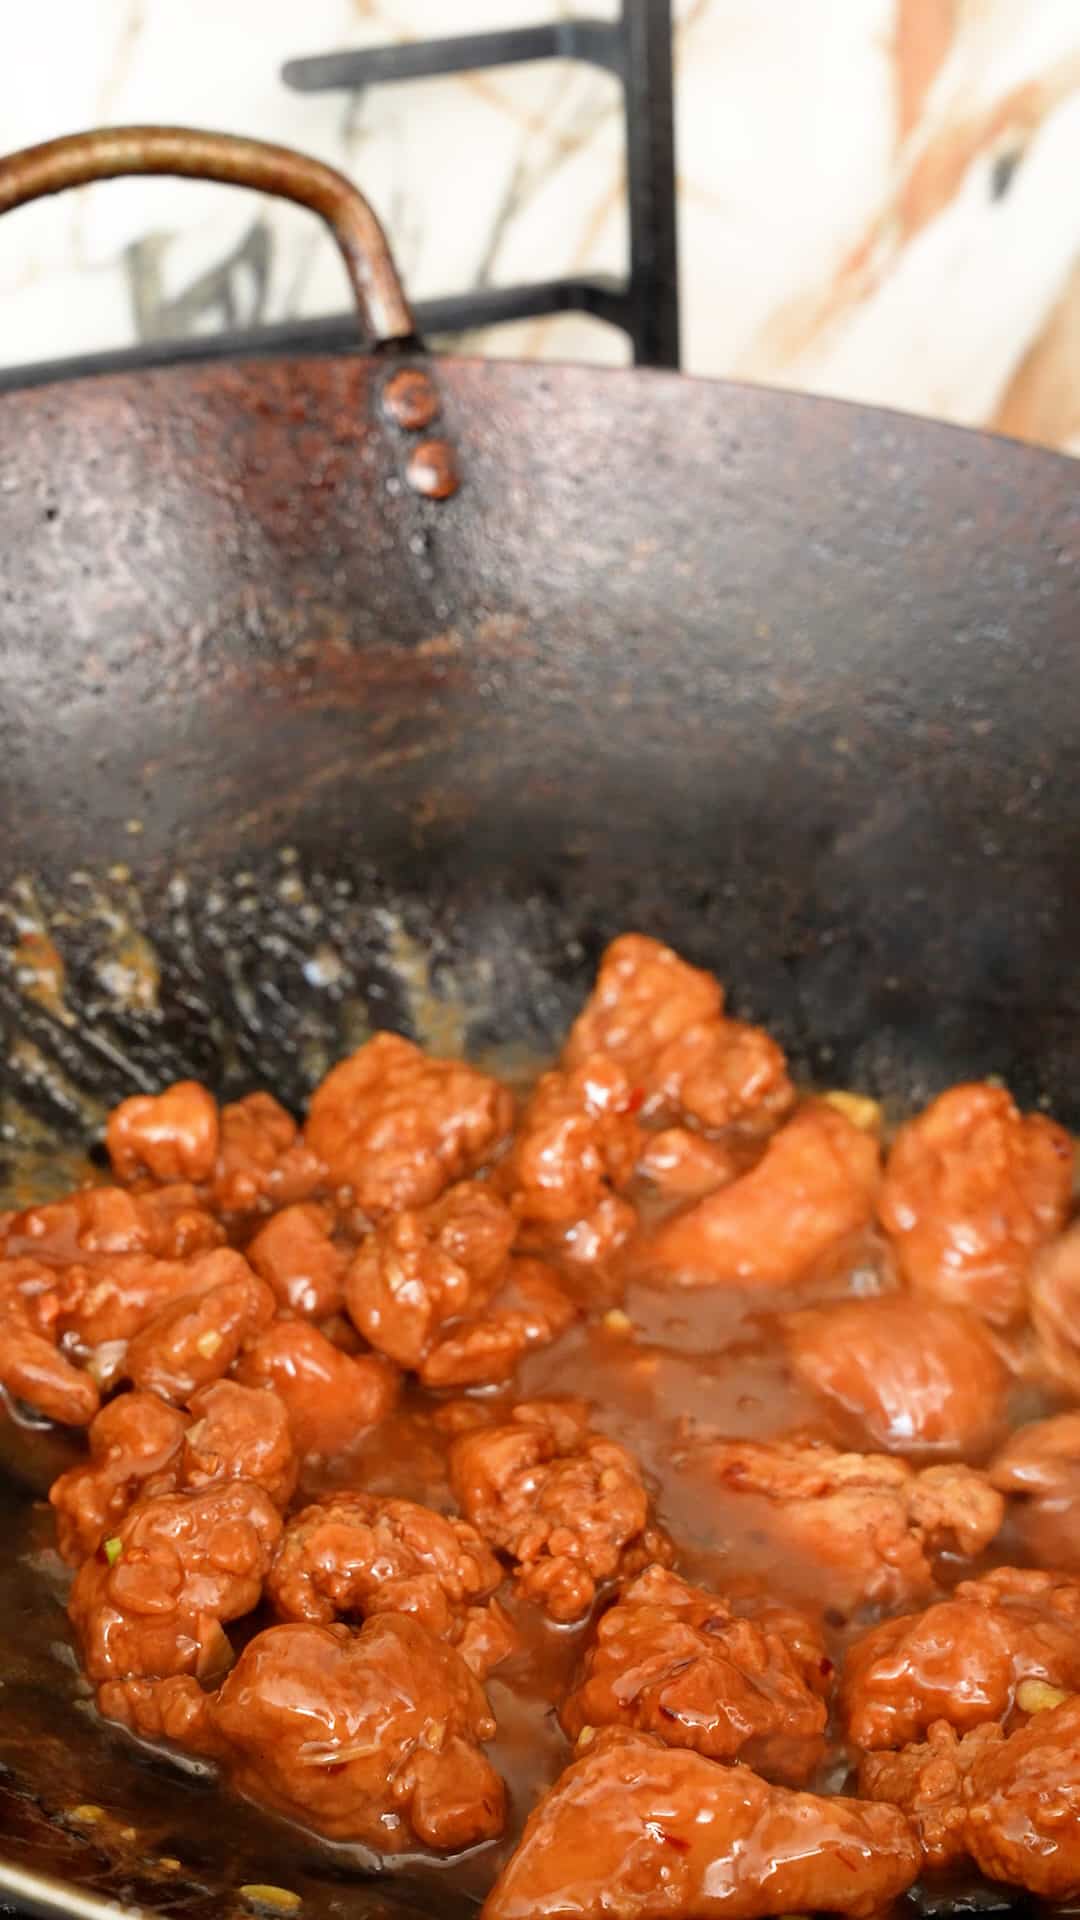 Crispy chicken being tossed in Orange sauce in a wok to make Orange Chicken.